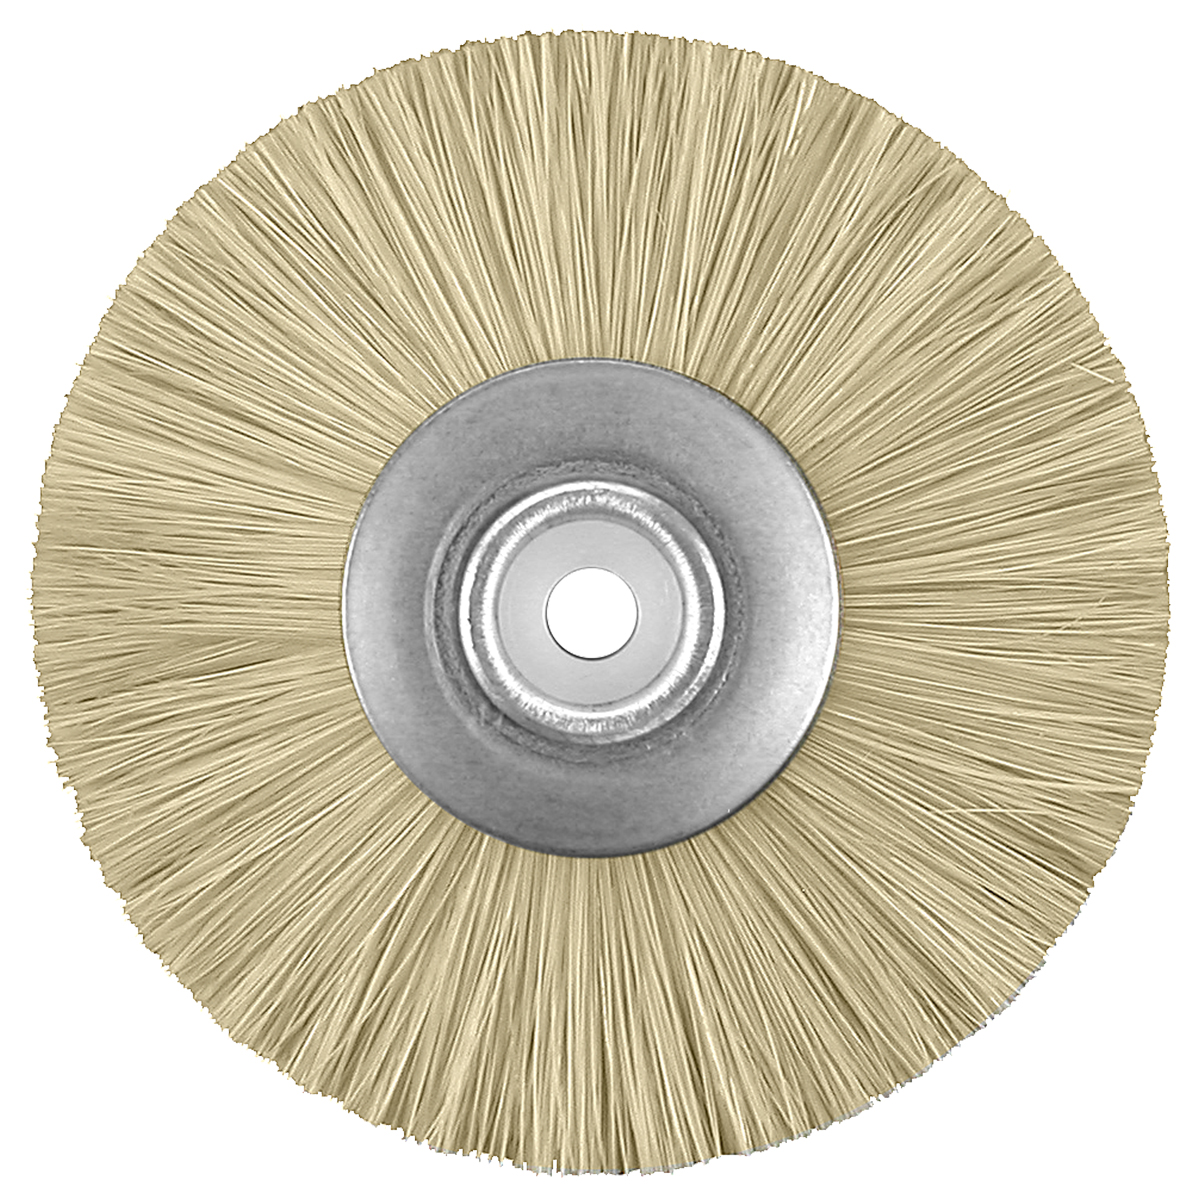 Brosse circulaire poils blancs 49 mm centre en métal et plastique